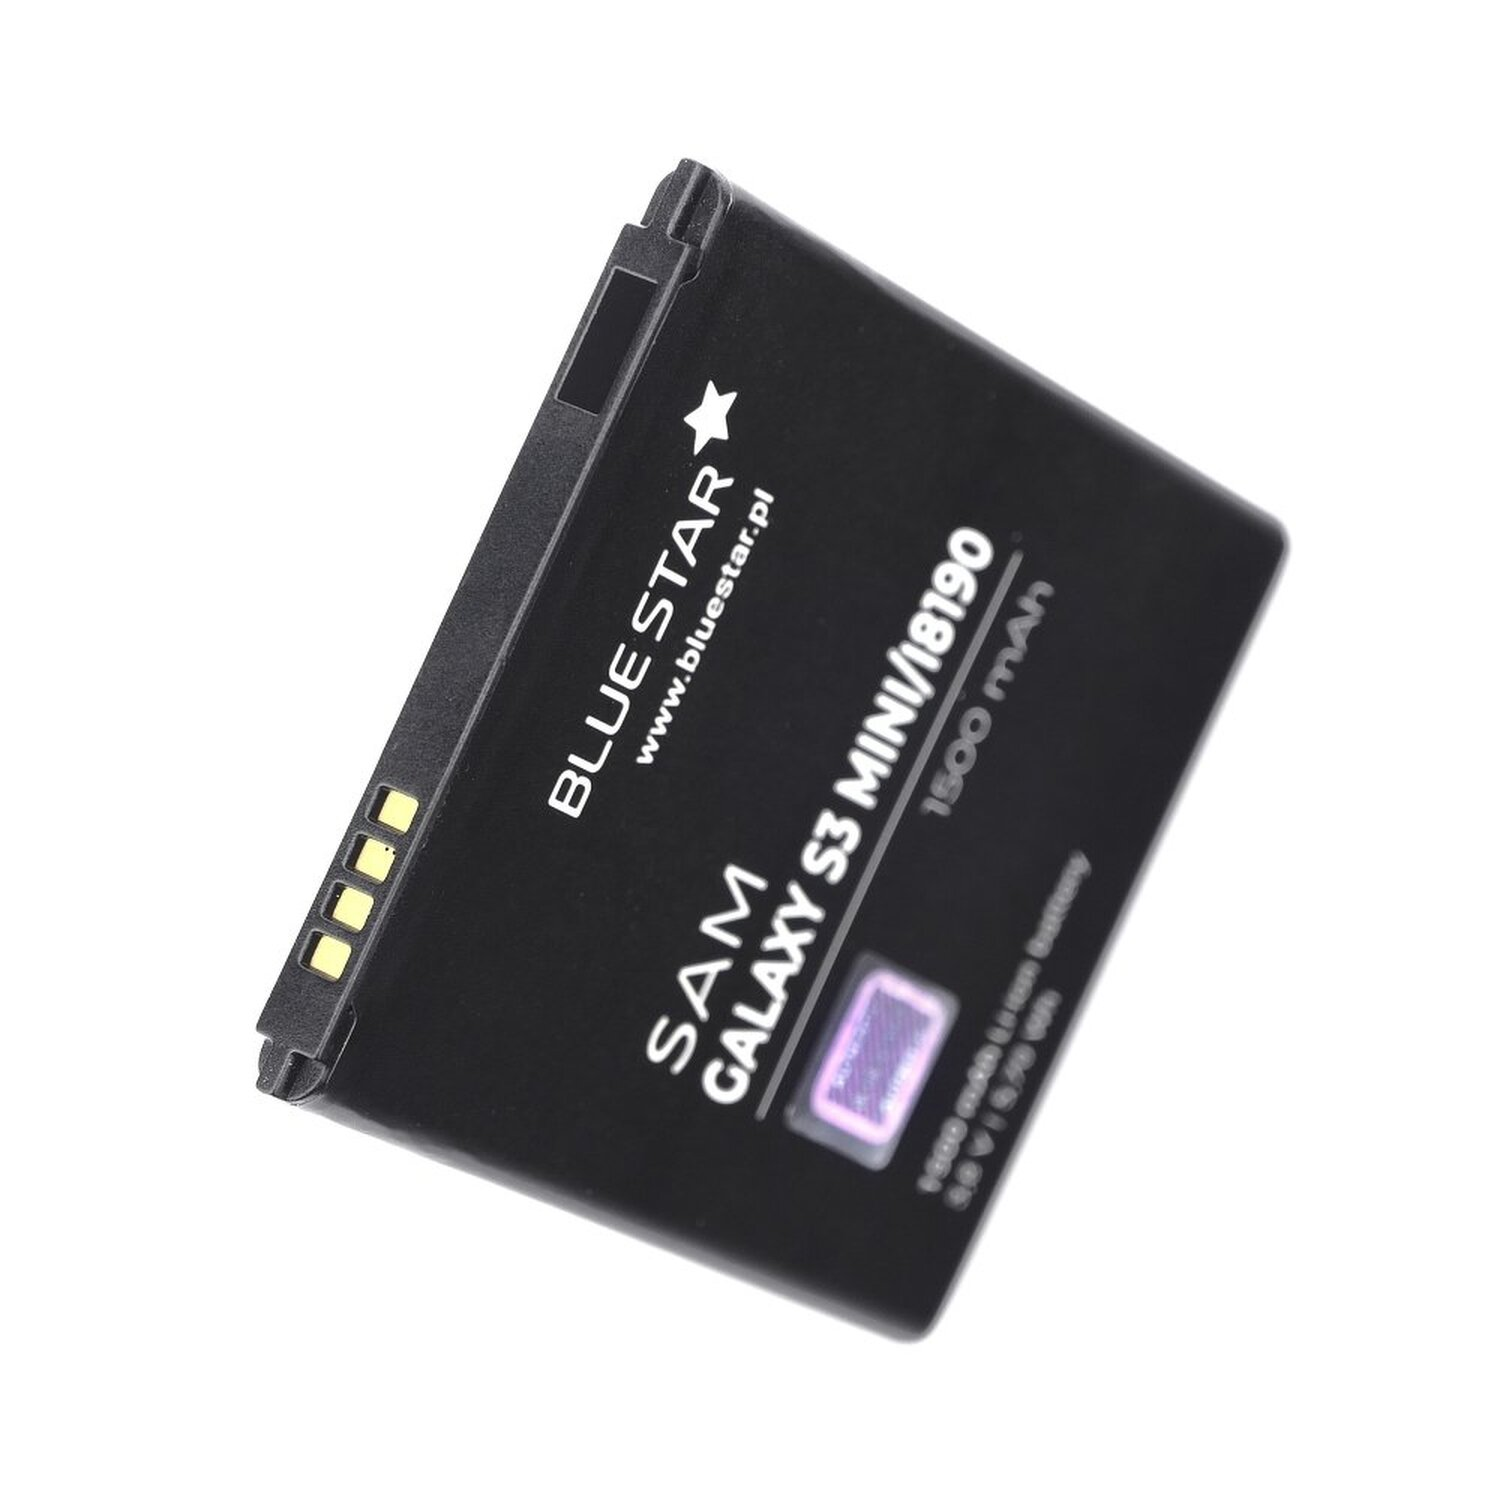 BLUESTAR für Akku Galaxy Li-Ion S3 Samsung Handyakku Mini I8190